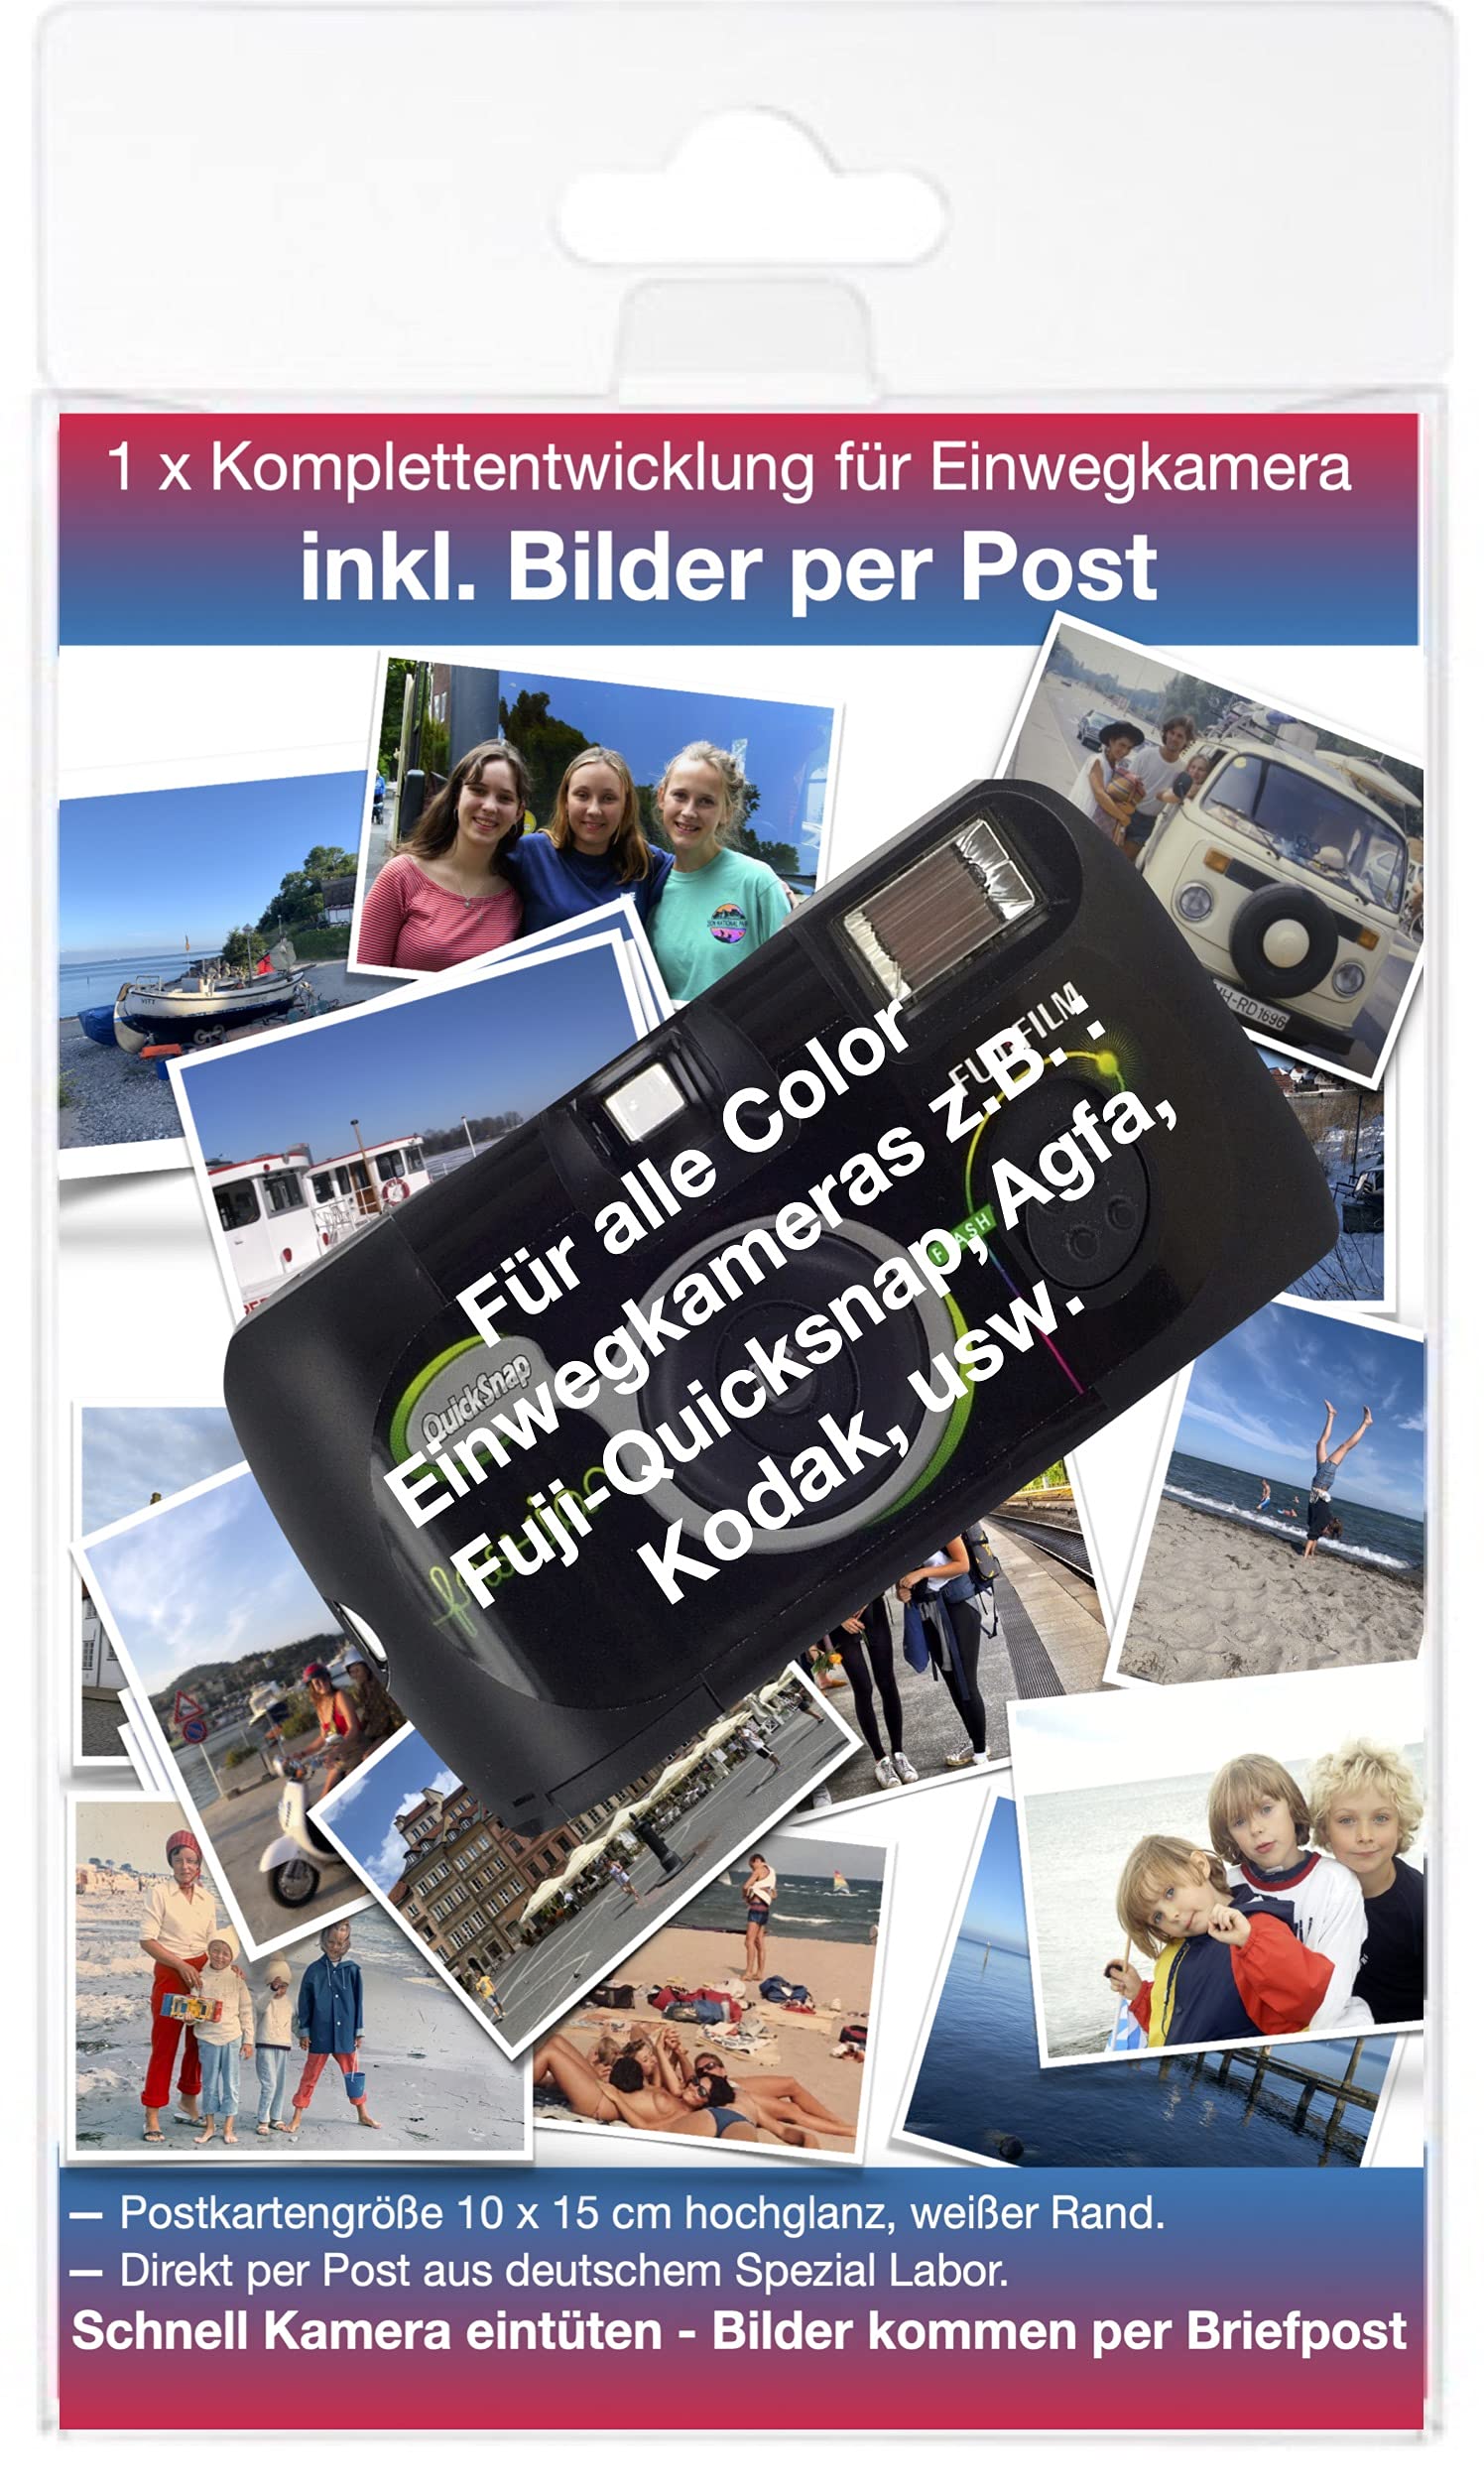 Farb Foto Komplett Entwicklung per Post - für Single Use- Einwegkamera bis zu 36 Bilder 10x15 Postkartengröße, auf Wunsch zusätzlich Daten per WE Transfer.Worldwide Shipping.